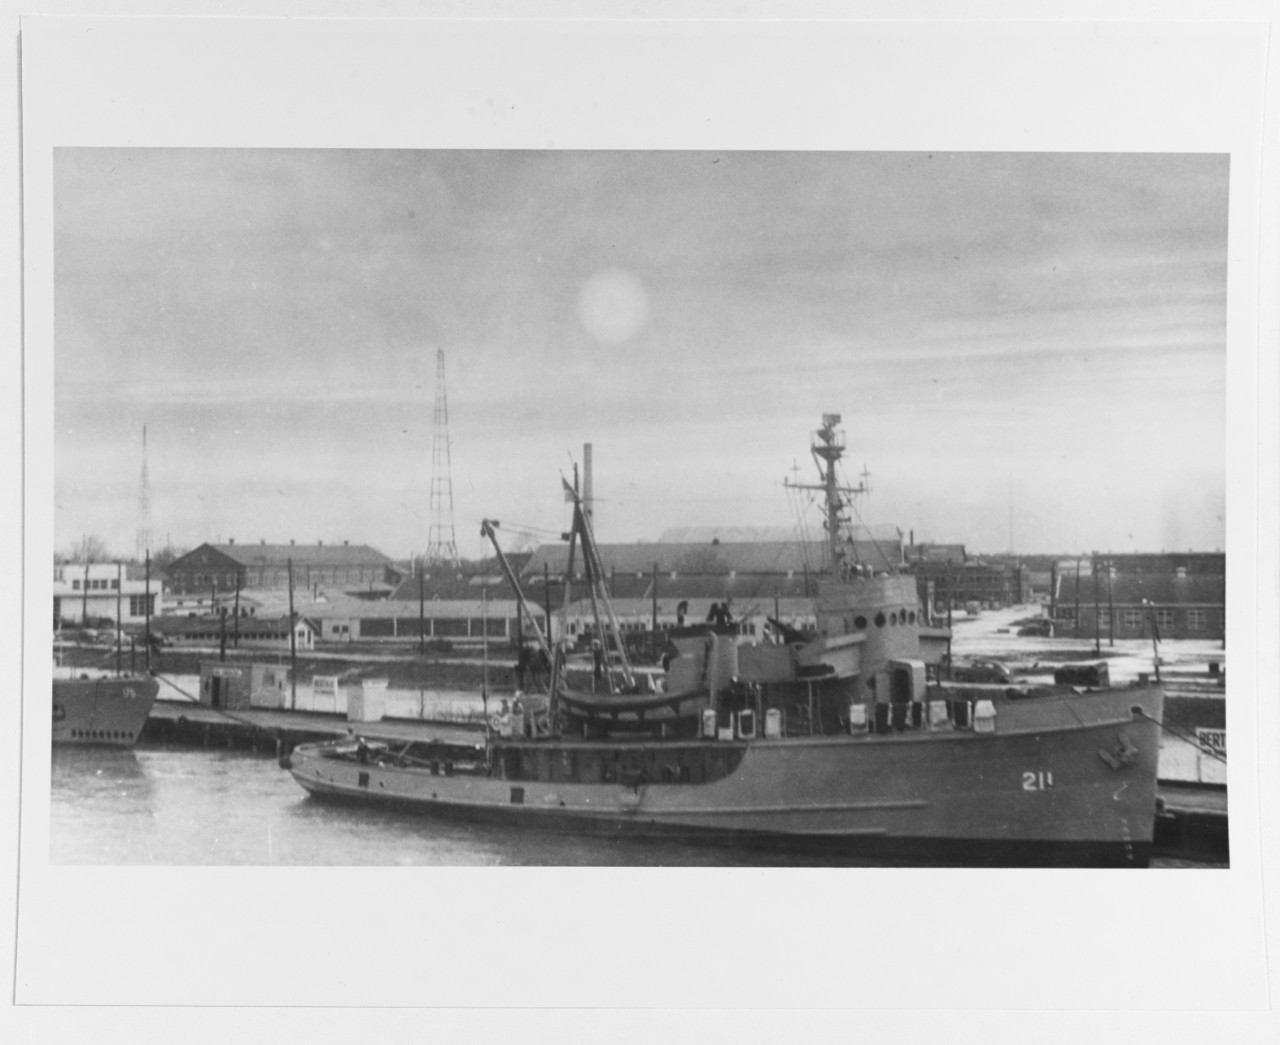 USS NAVAJO (ATA-211)